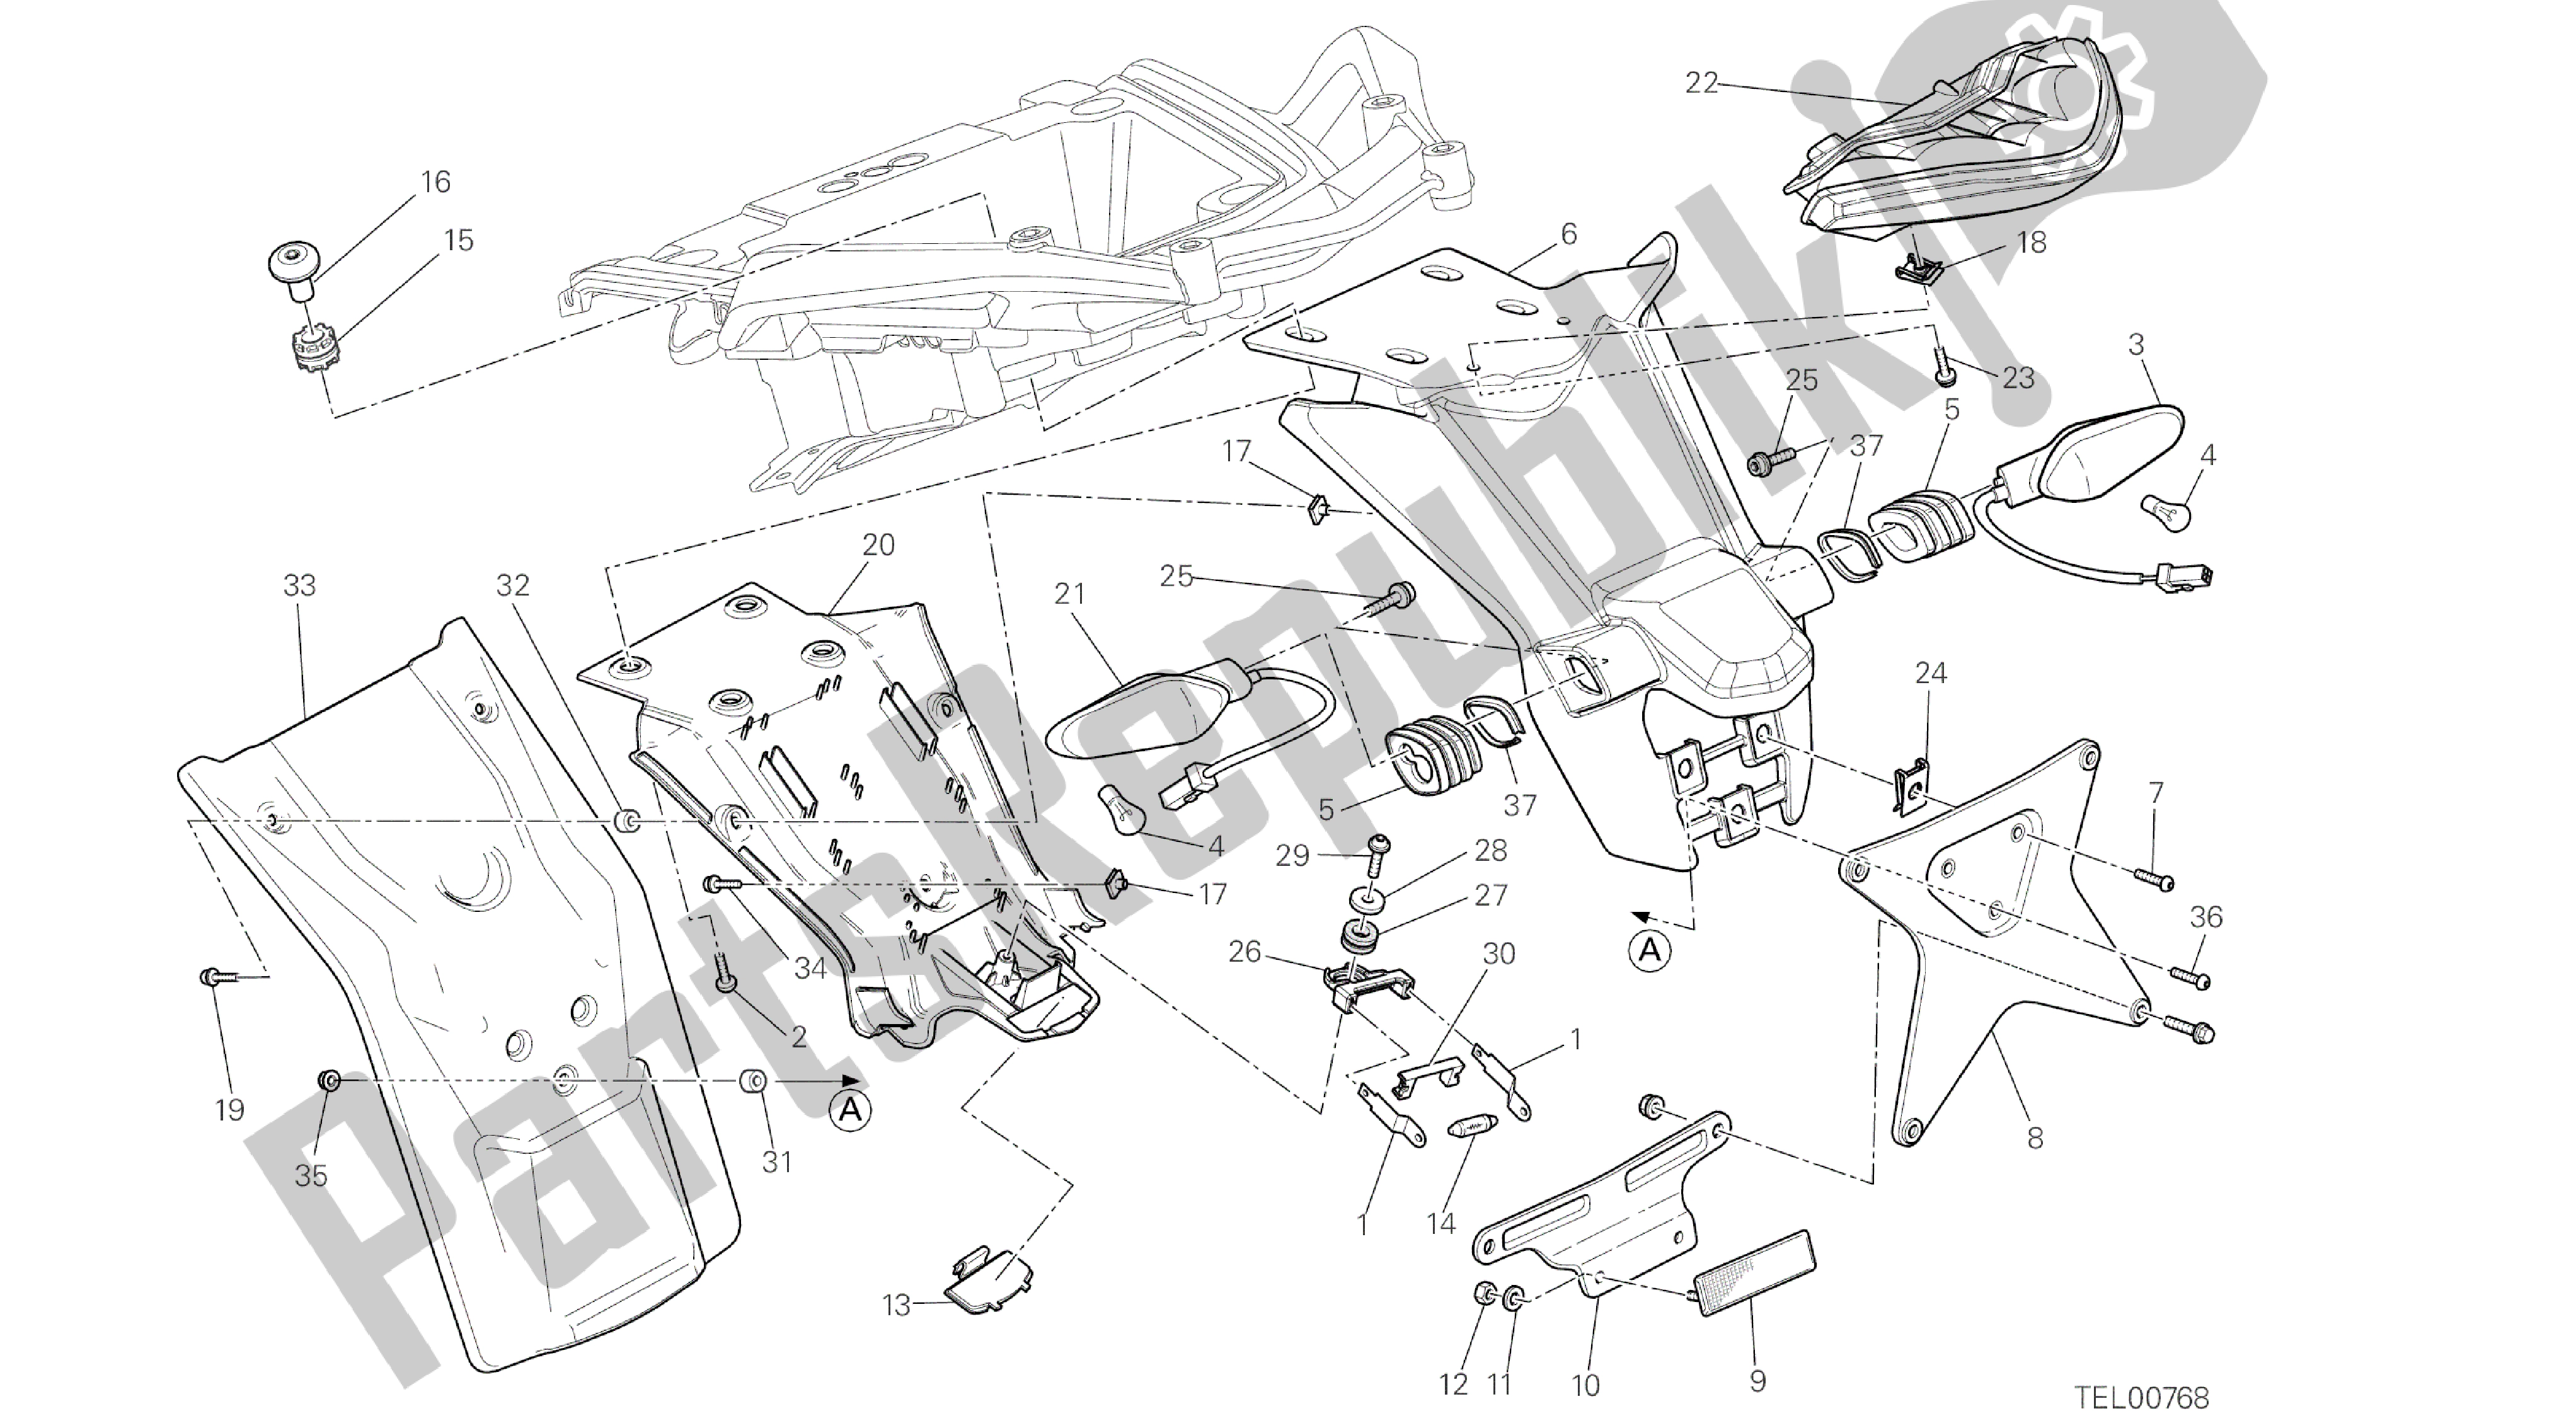 Todas as partes de Desenho 27b - Suporte Da Placa Do Carro - Farol Traseiro Aus [mod: Ms1200st; Xst: Aus] Group Electric do Ducati Multistrada S Touring 1200 2014